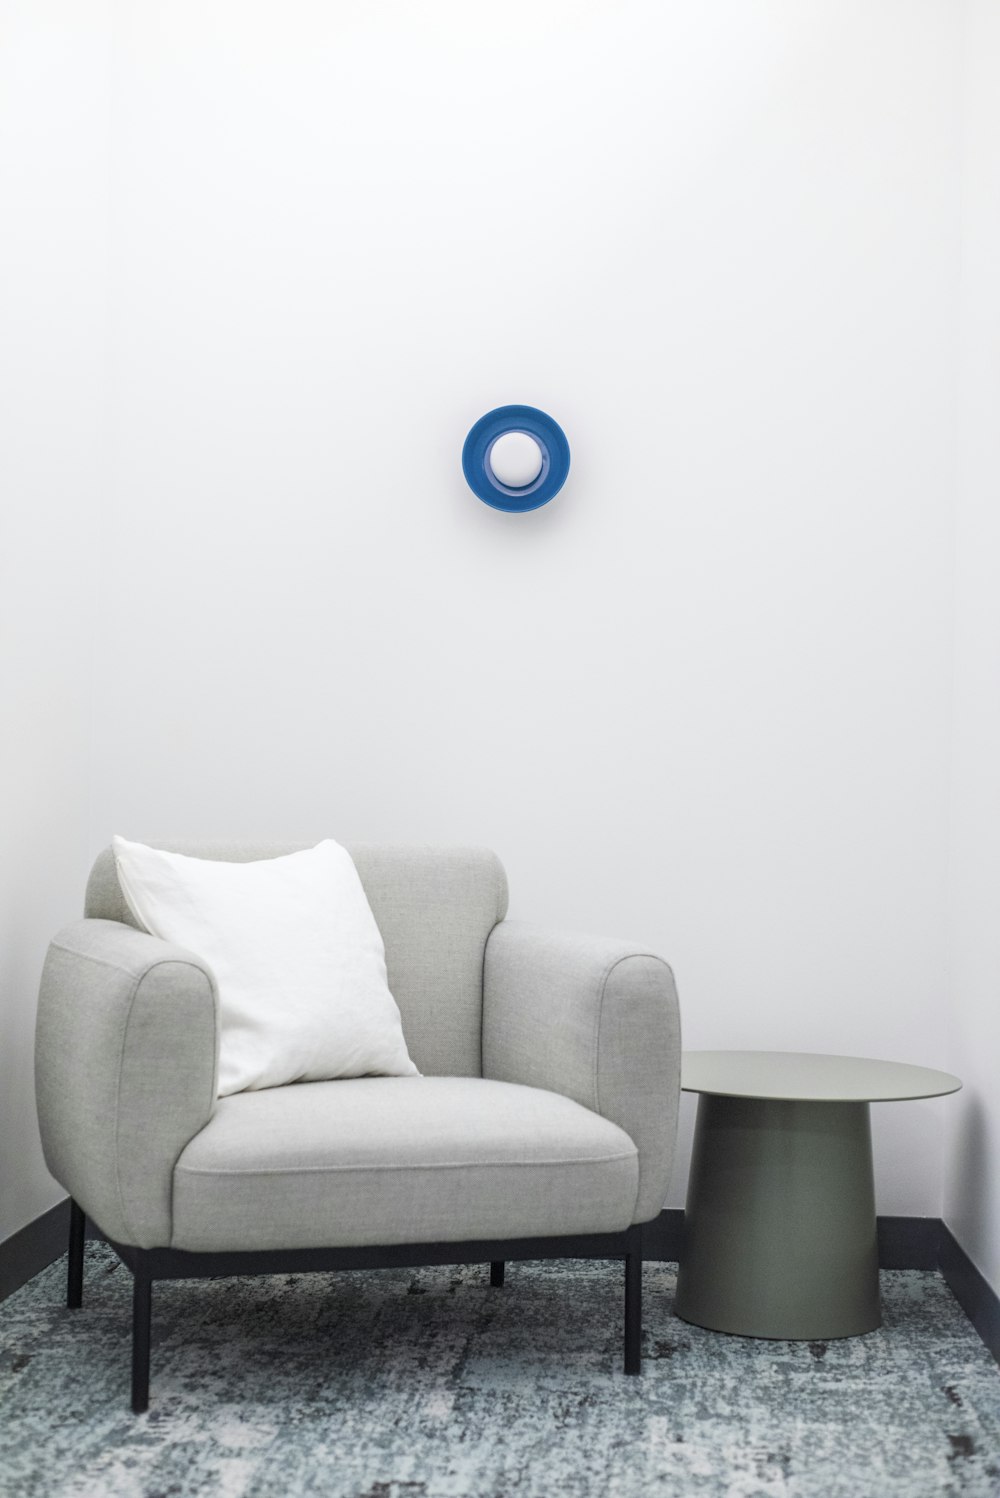 Boule ronde bleue sur canapé gris